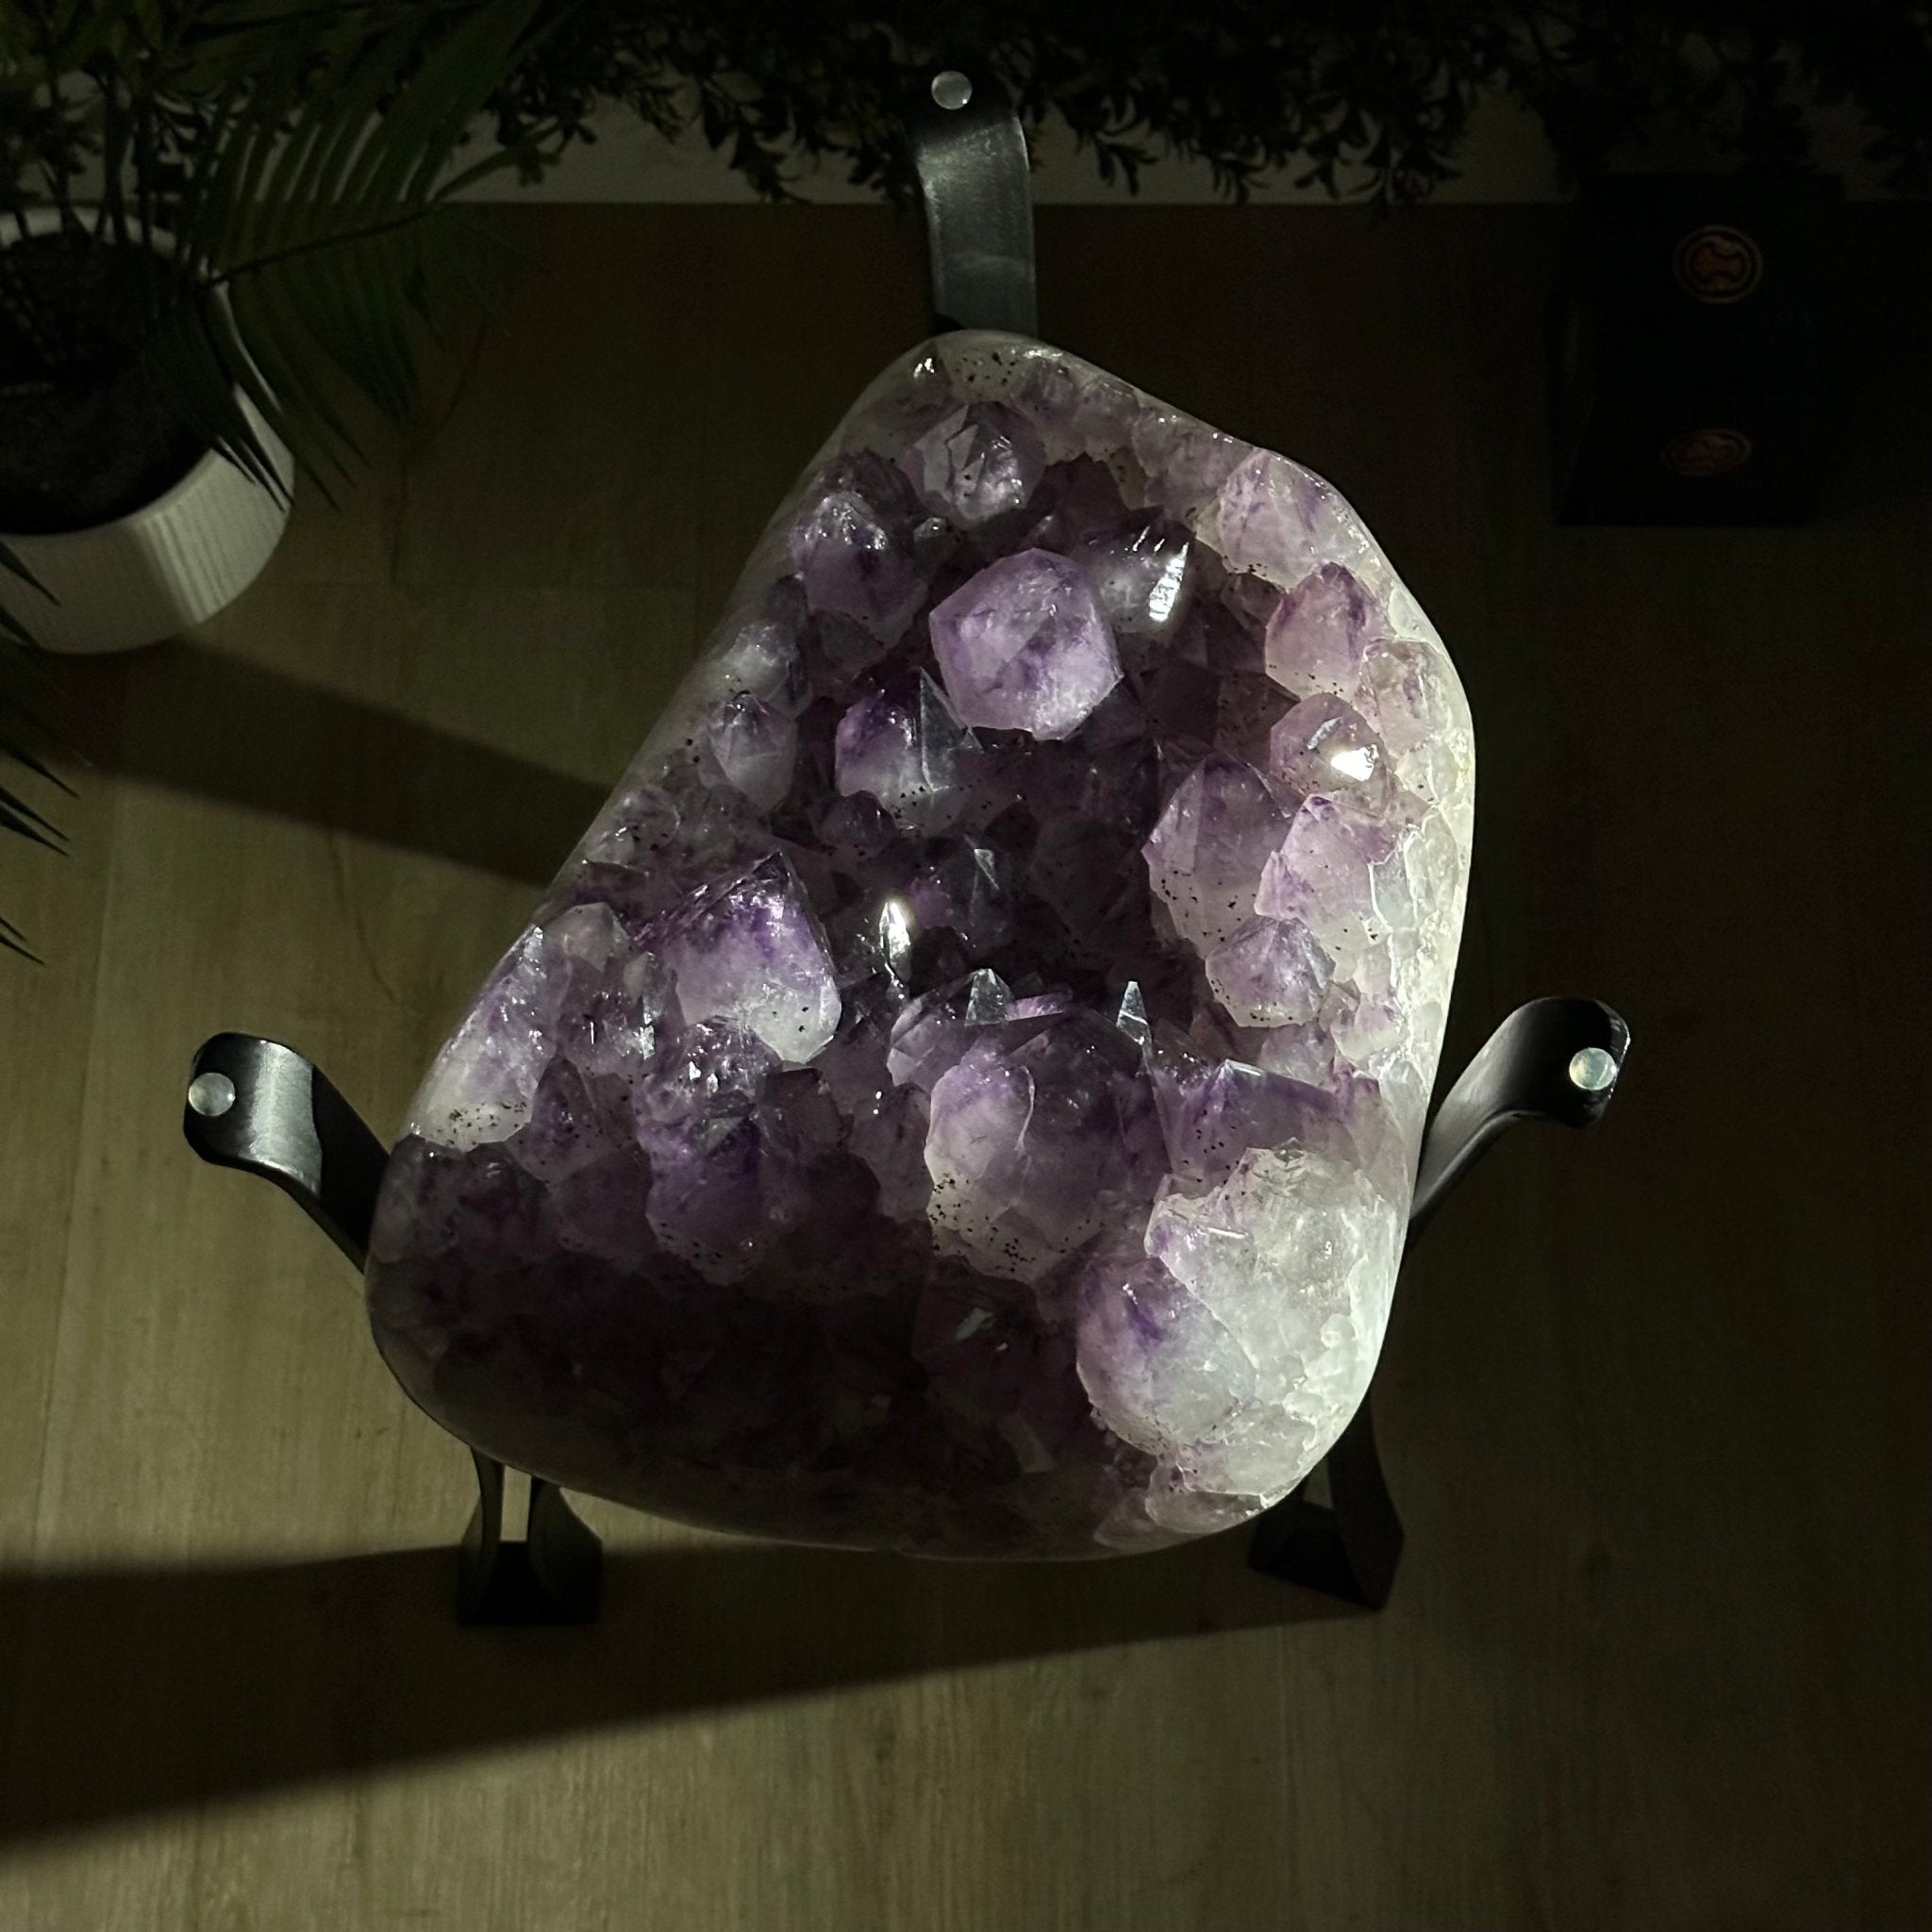 Brazilian Amethyst Geode Side Table, 39.6 lbs, 21.7" Tall #1384-0036 - Brazil GemsBrazil GemsBrazilian Amethyst Geode Side Table, 39.6 lbs, 21.7" Tall #1384-0036Tables: Side1384-0036